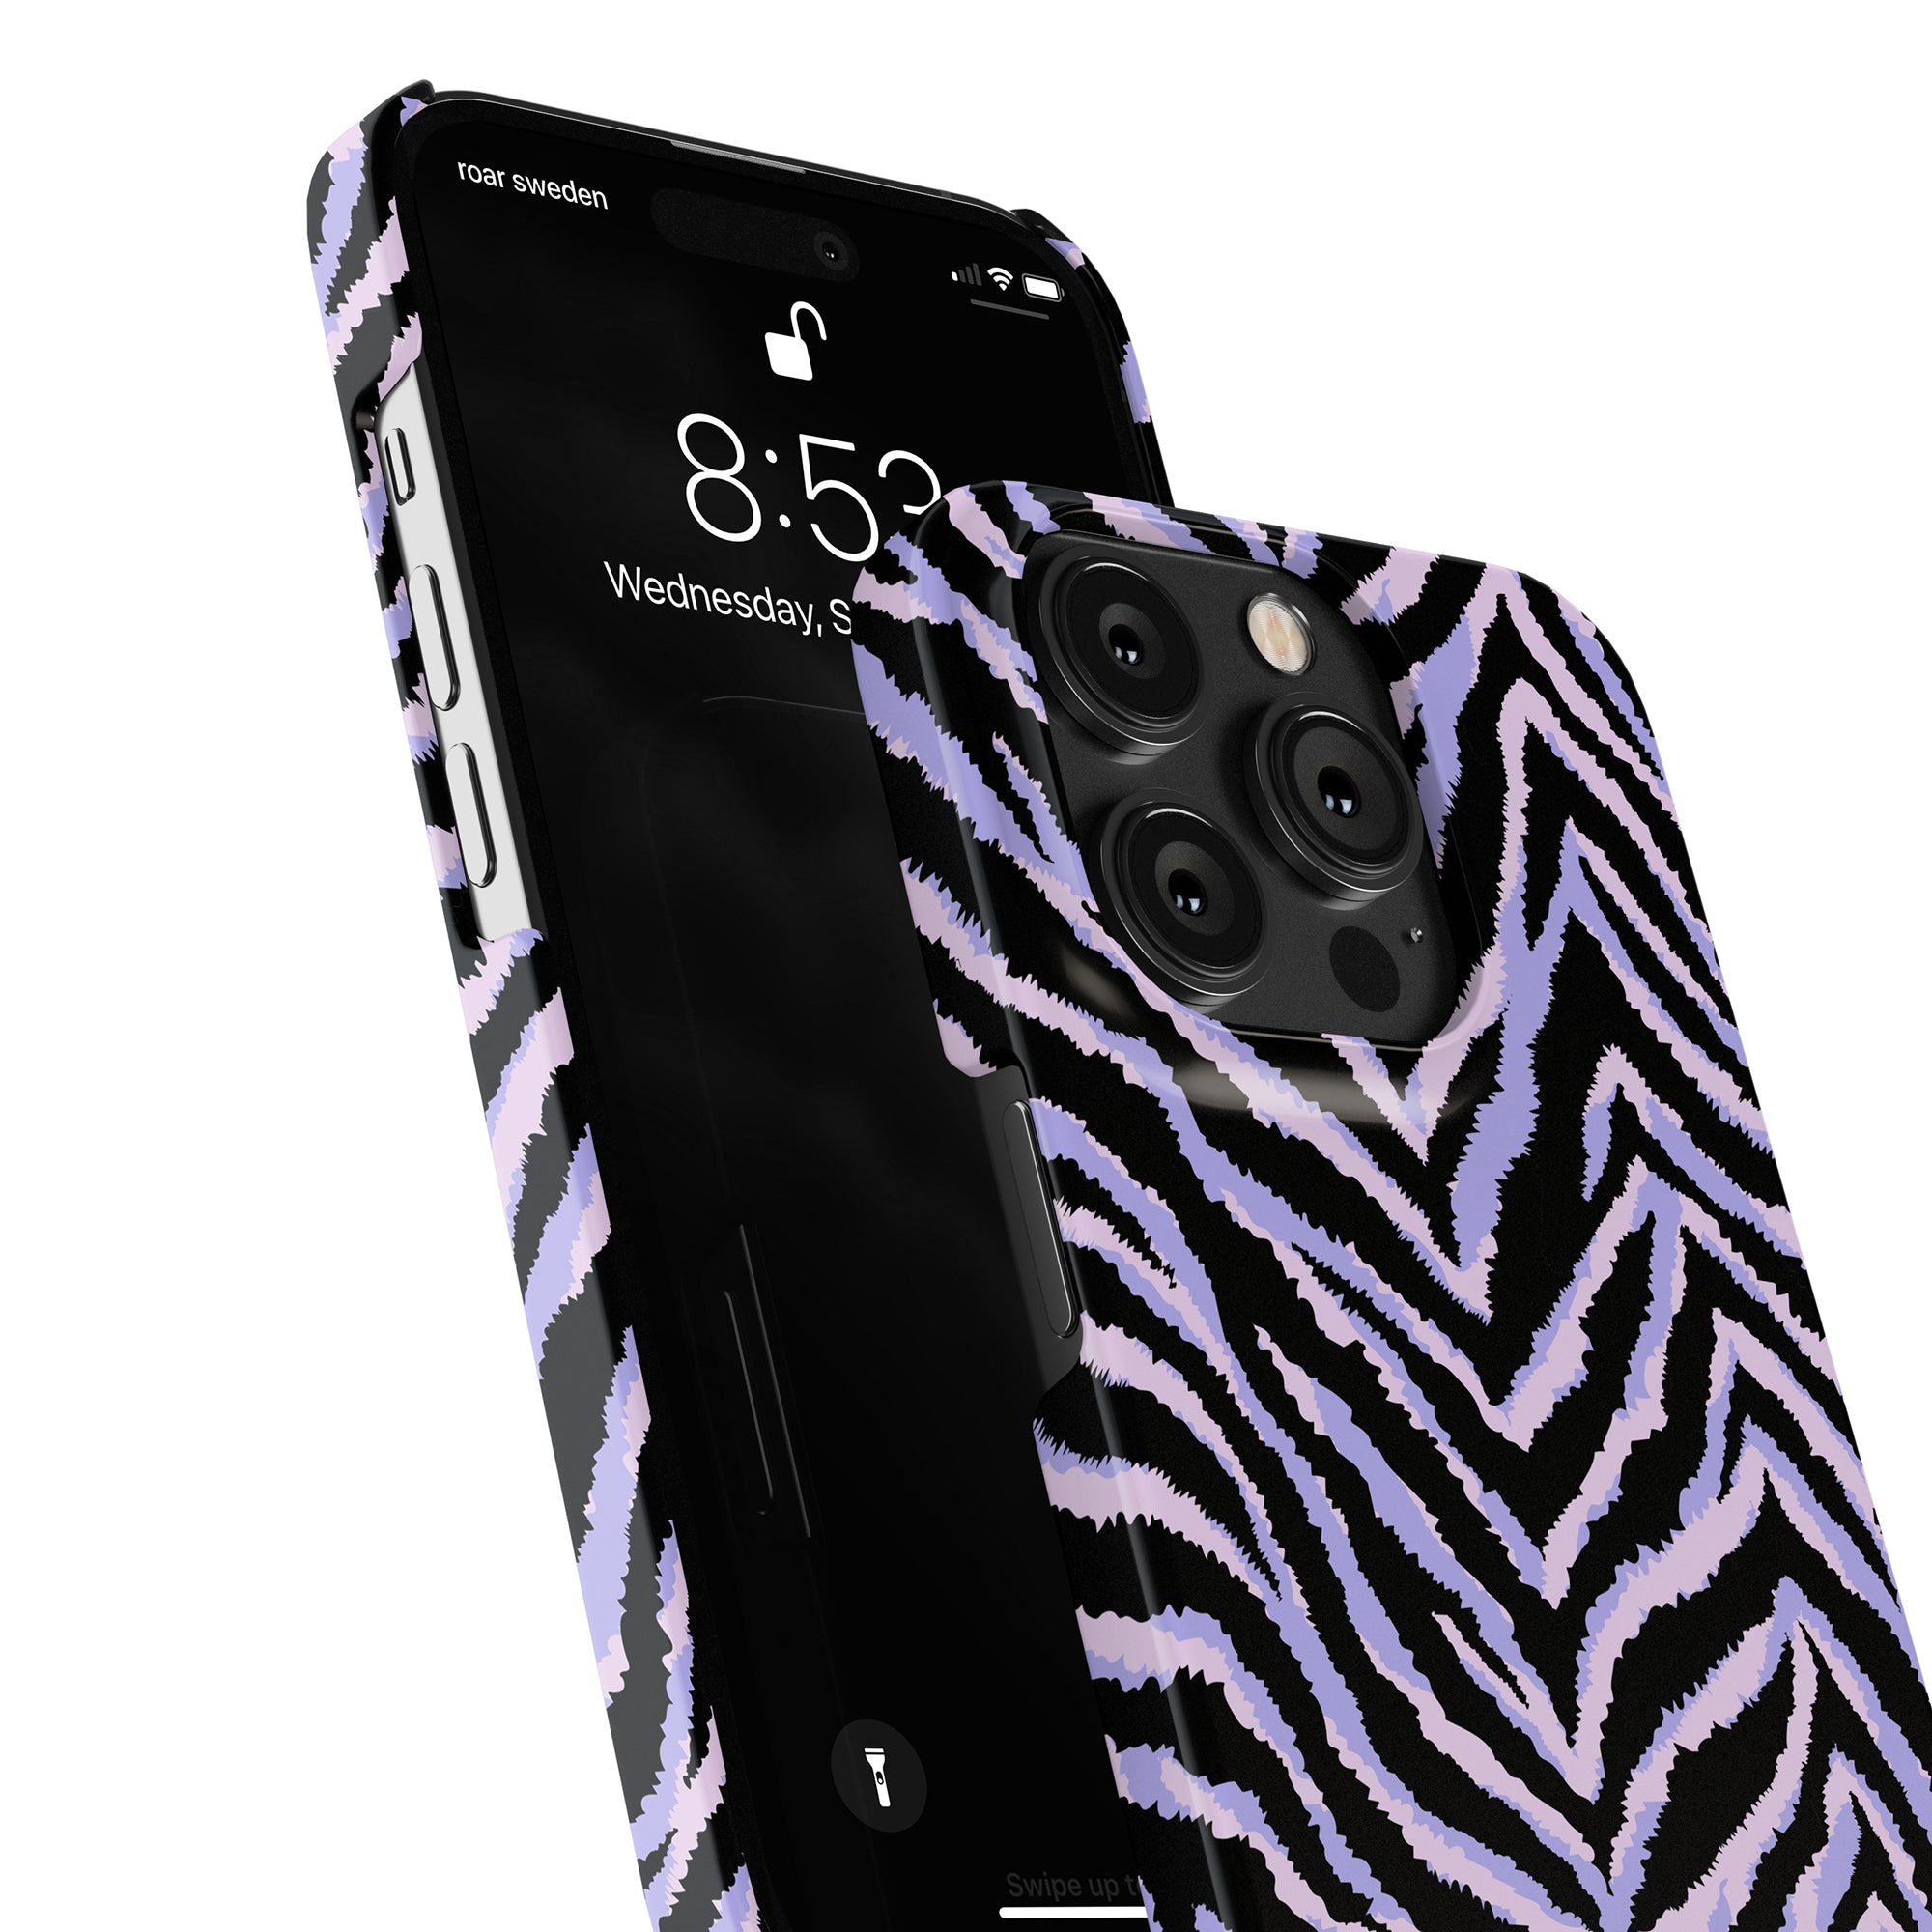 Förbättra din smartphonestil med det eleganta Zebra - Slim Case från Roar Sweden som passar perfekt till din iPhone 11 Pro.